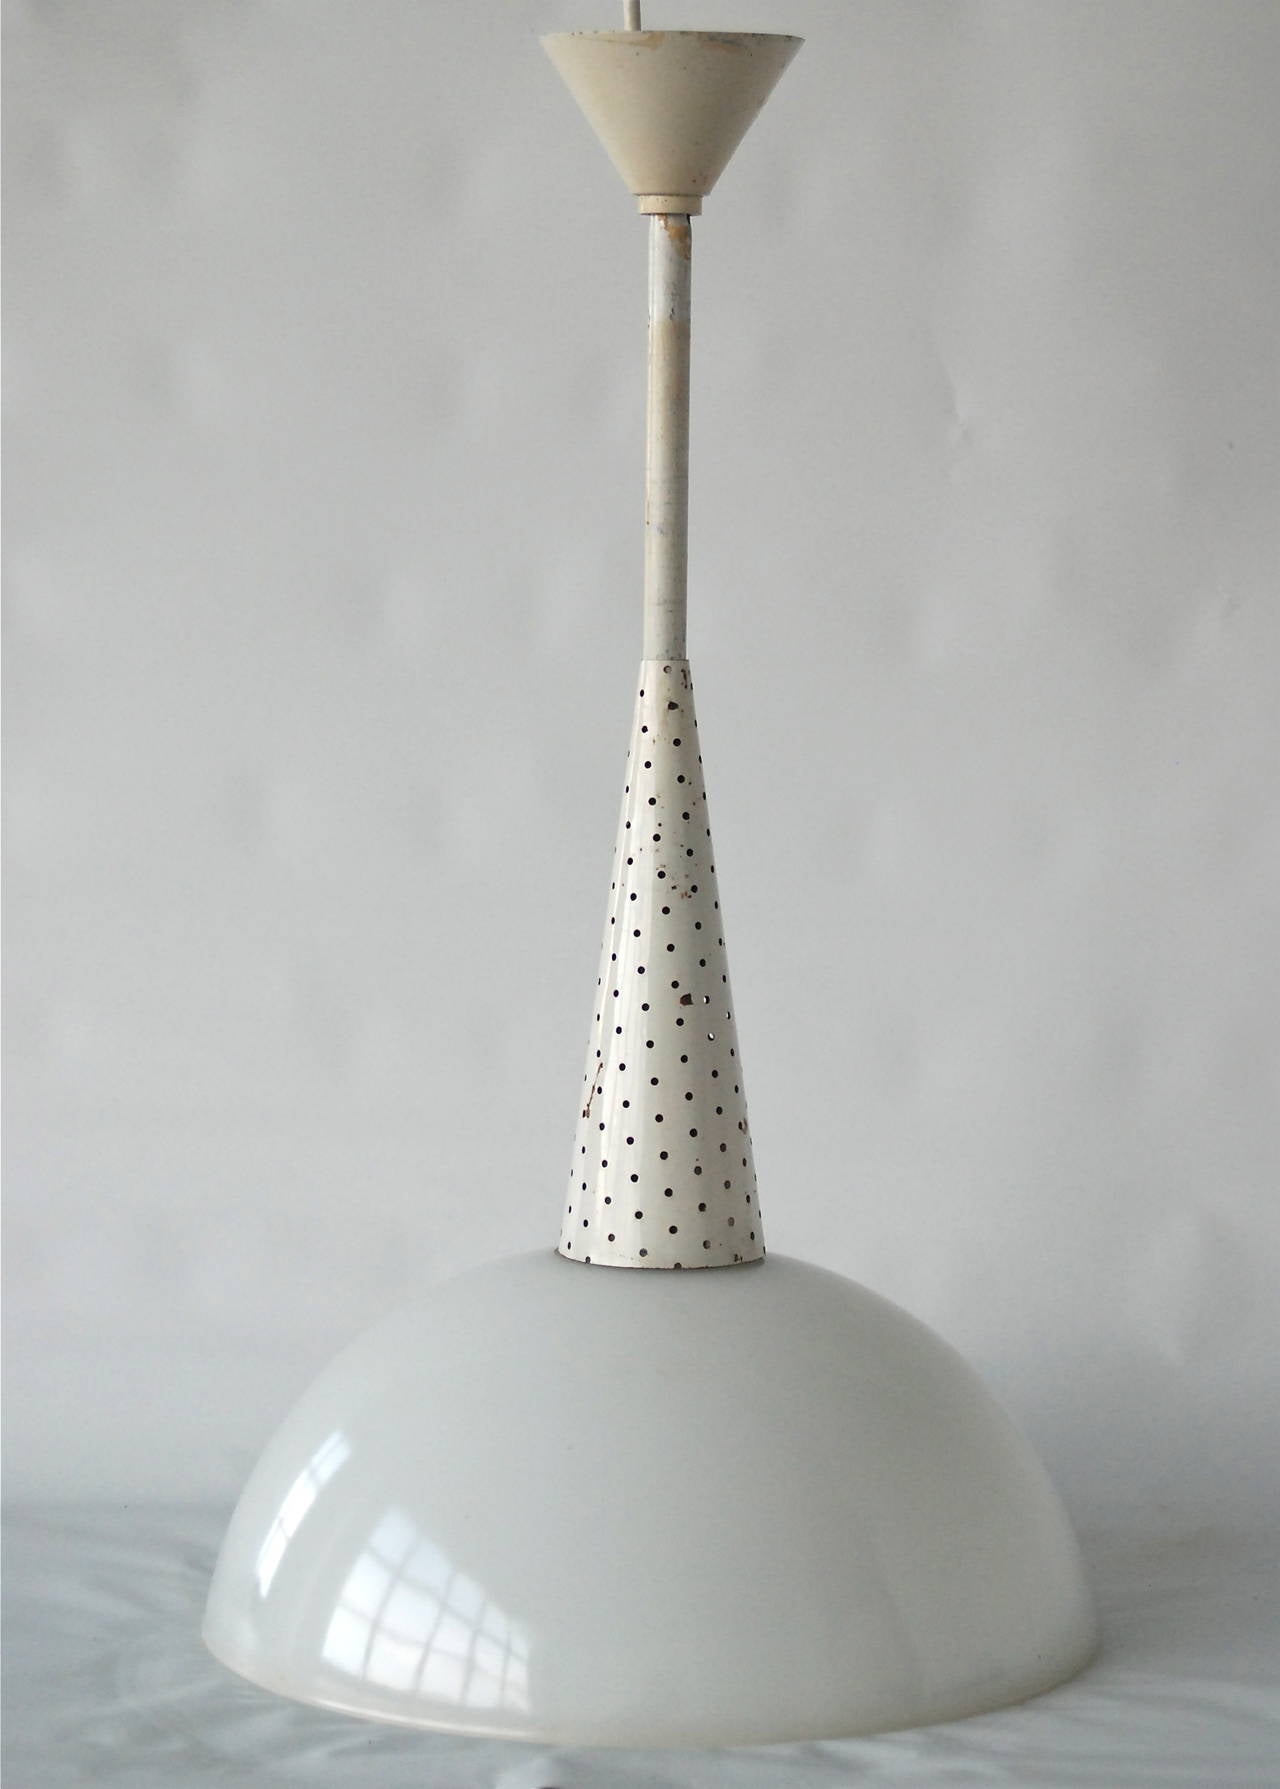 Ein von Mathieu Matégot entworfener Anhänger, Frankreich, ca. 1950er Jahre.
Schirm aus Opalglas mit Diffusor aus klar strukturiertem Glas und lackiertem Aluminium.
Originalfarbe. Markiert auf dem Glas: Hergestellt in Frankreich.
Bestehende